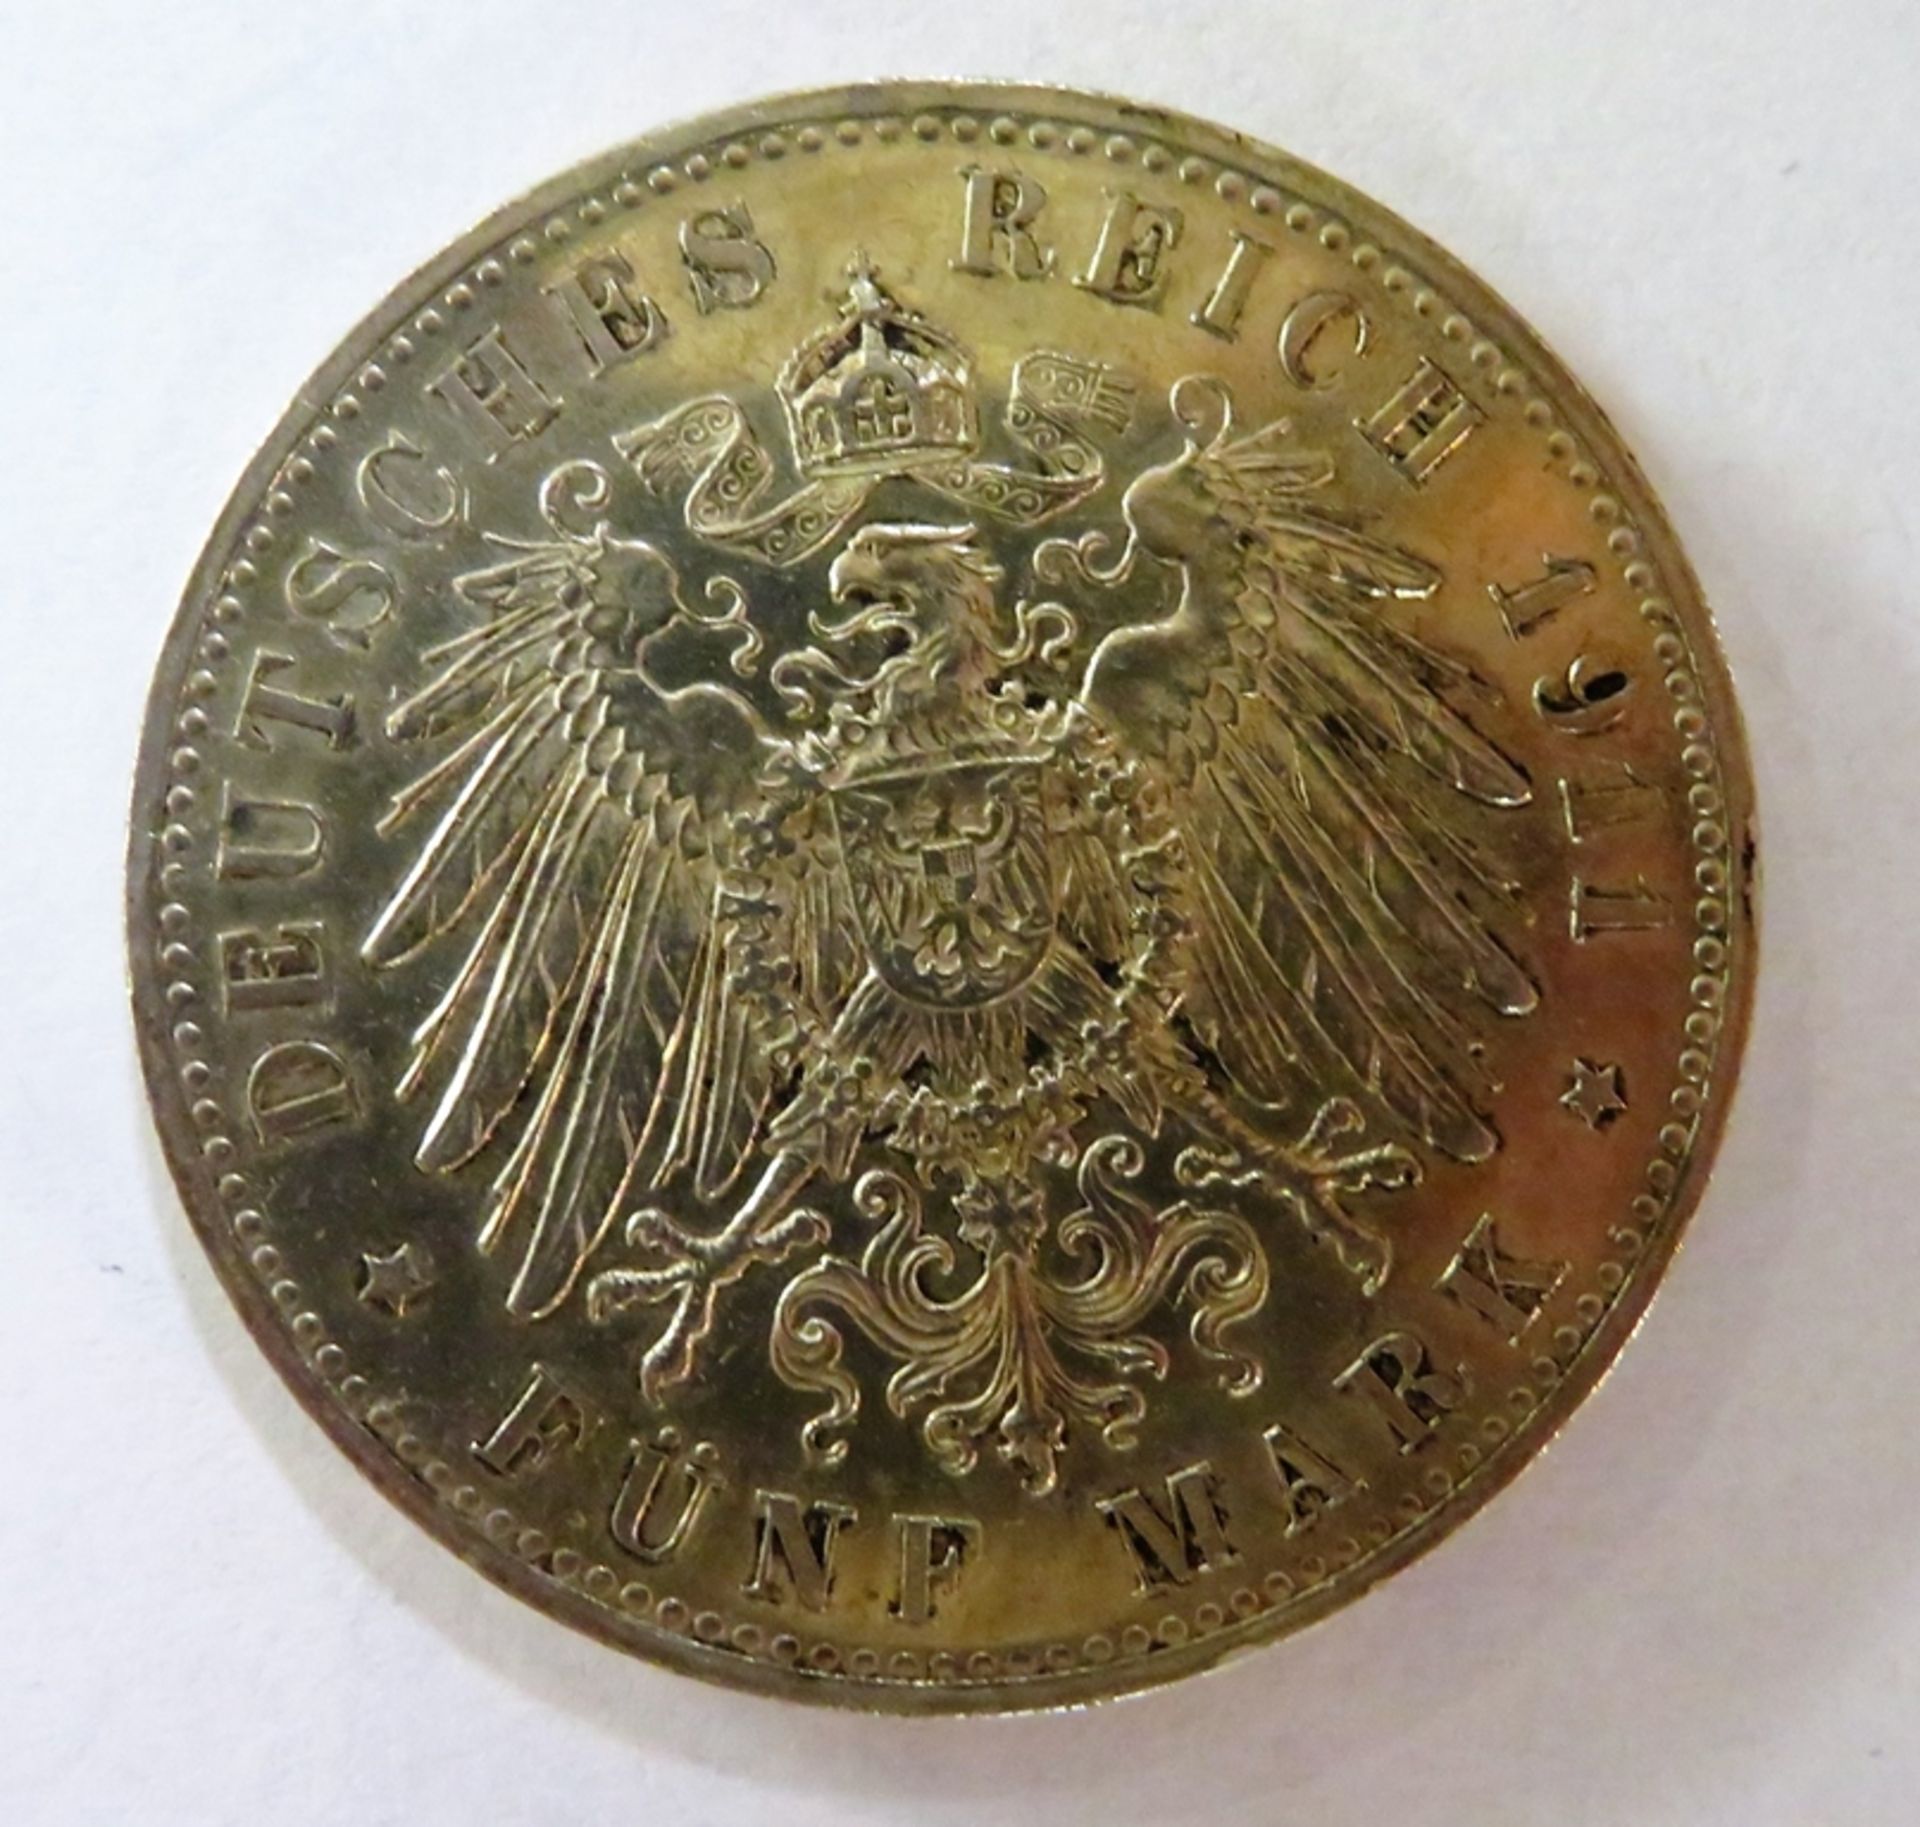 Silbermünze, 5 Mark, D, Prinzregent Luitpold von Bayern, 1821 - 1911, Silber 900/000, 27,7 g, d 3,9 - Image 2 of 2